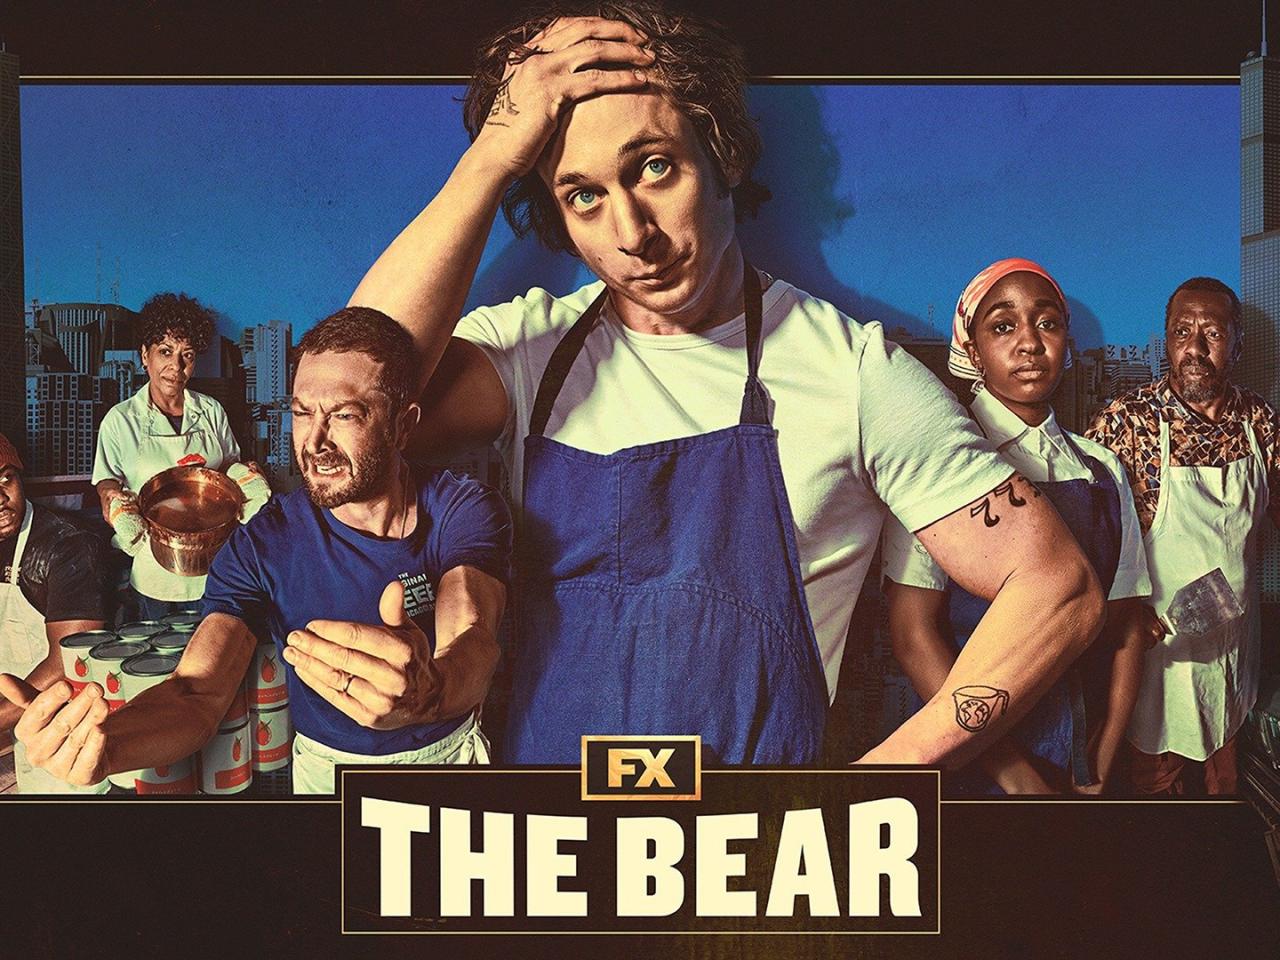 The bear cast season 1